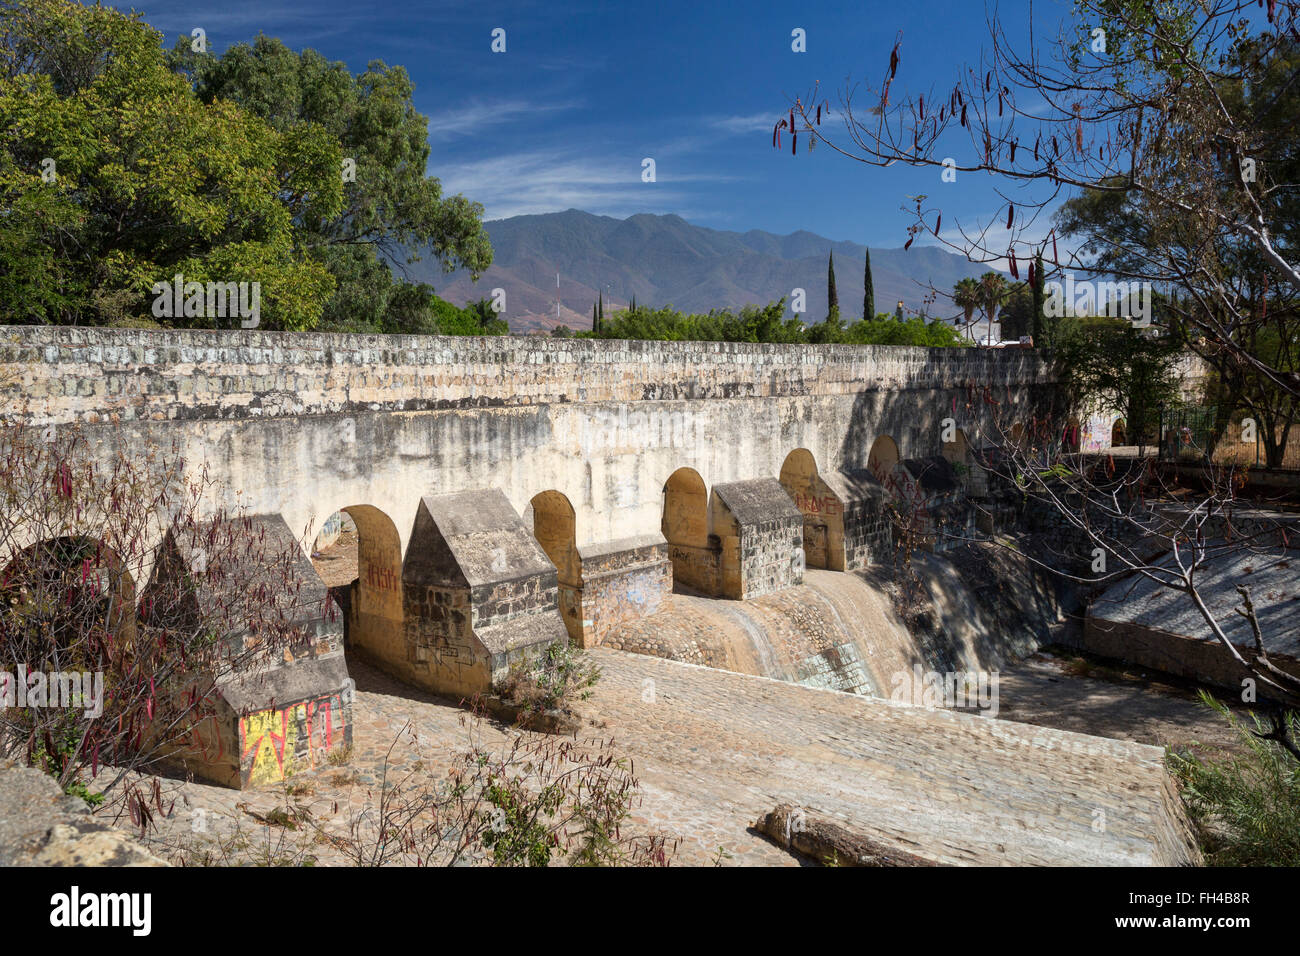 Oaxaca, México - El Acueducto la Cascada (La Cascada Acueducto) fue parte de un sistema de abastecimiento de agua de Oaxaca. Foto de stock